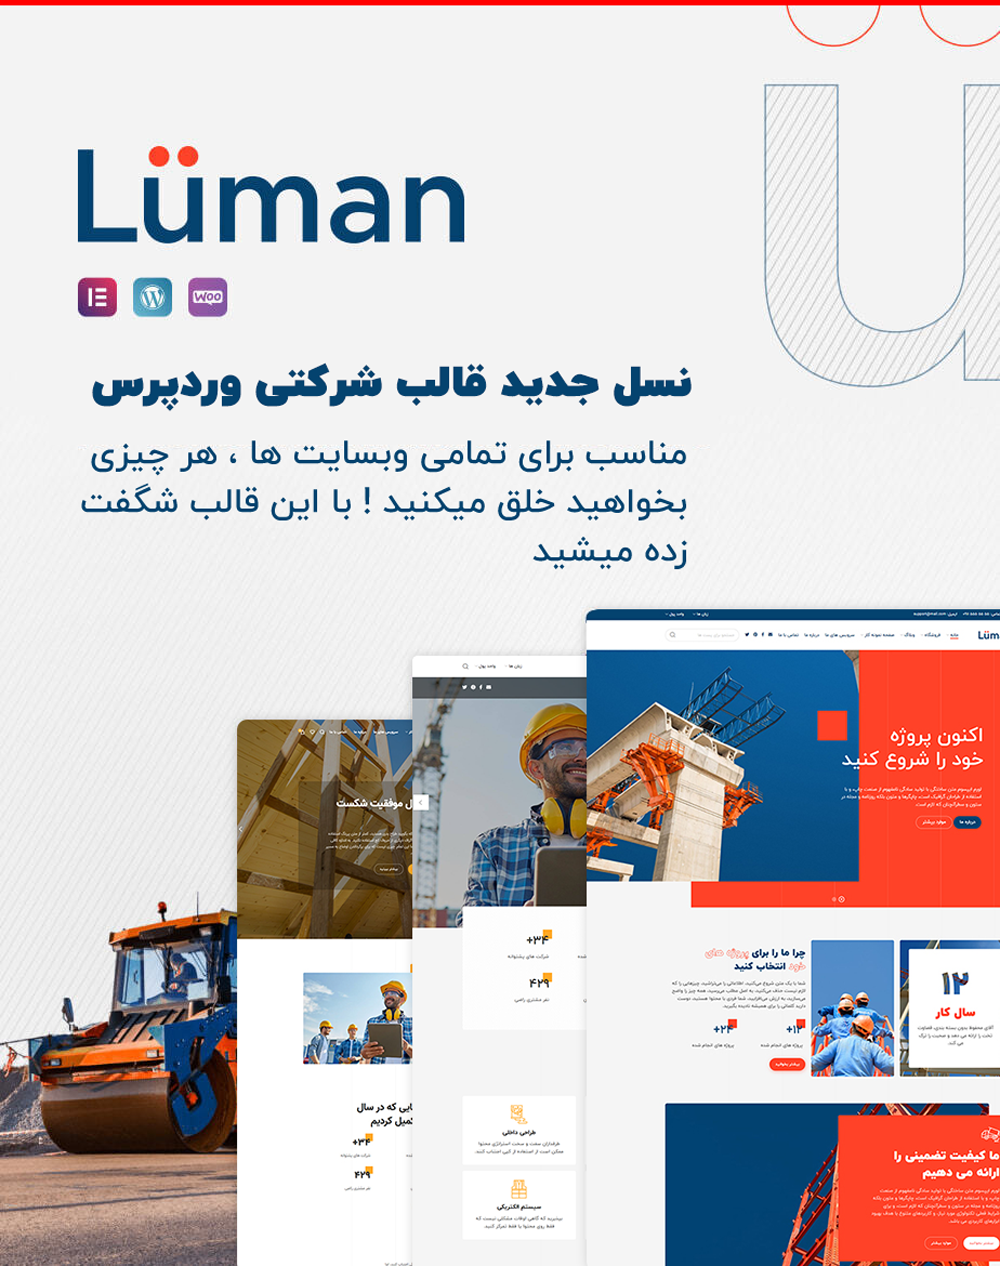 قالب شرکتی وردپرس luman با دموهای متنوه و صفحات واکنشگرا